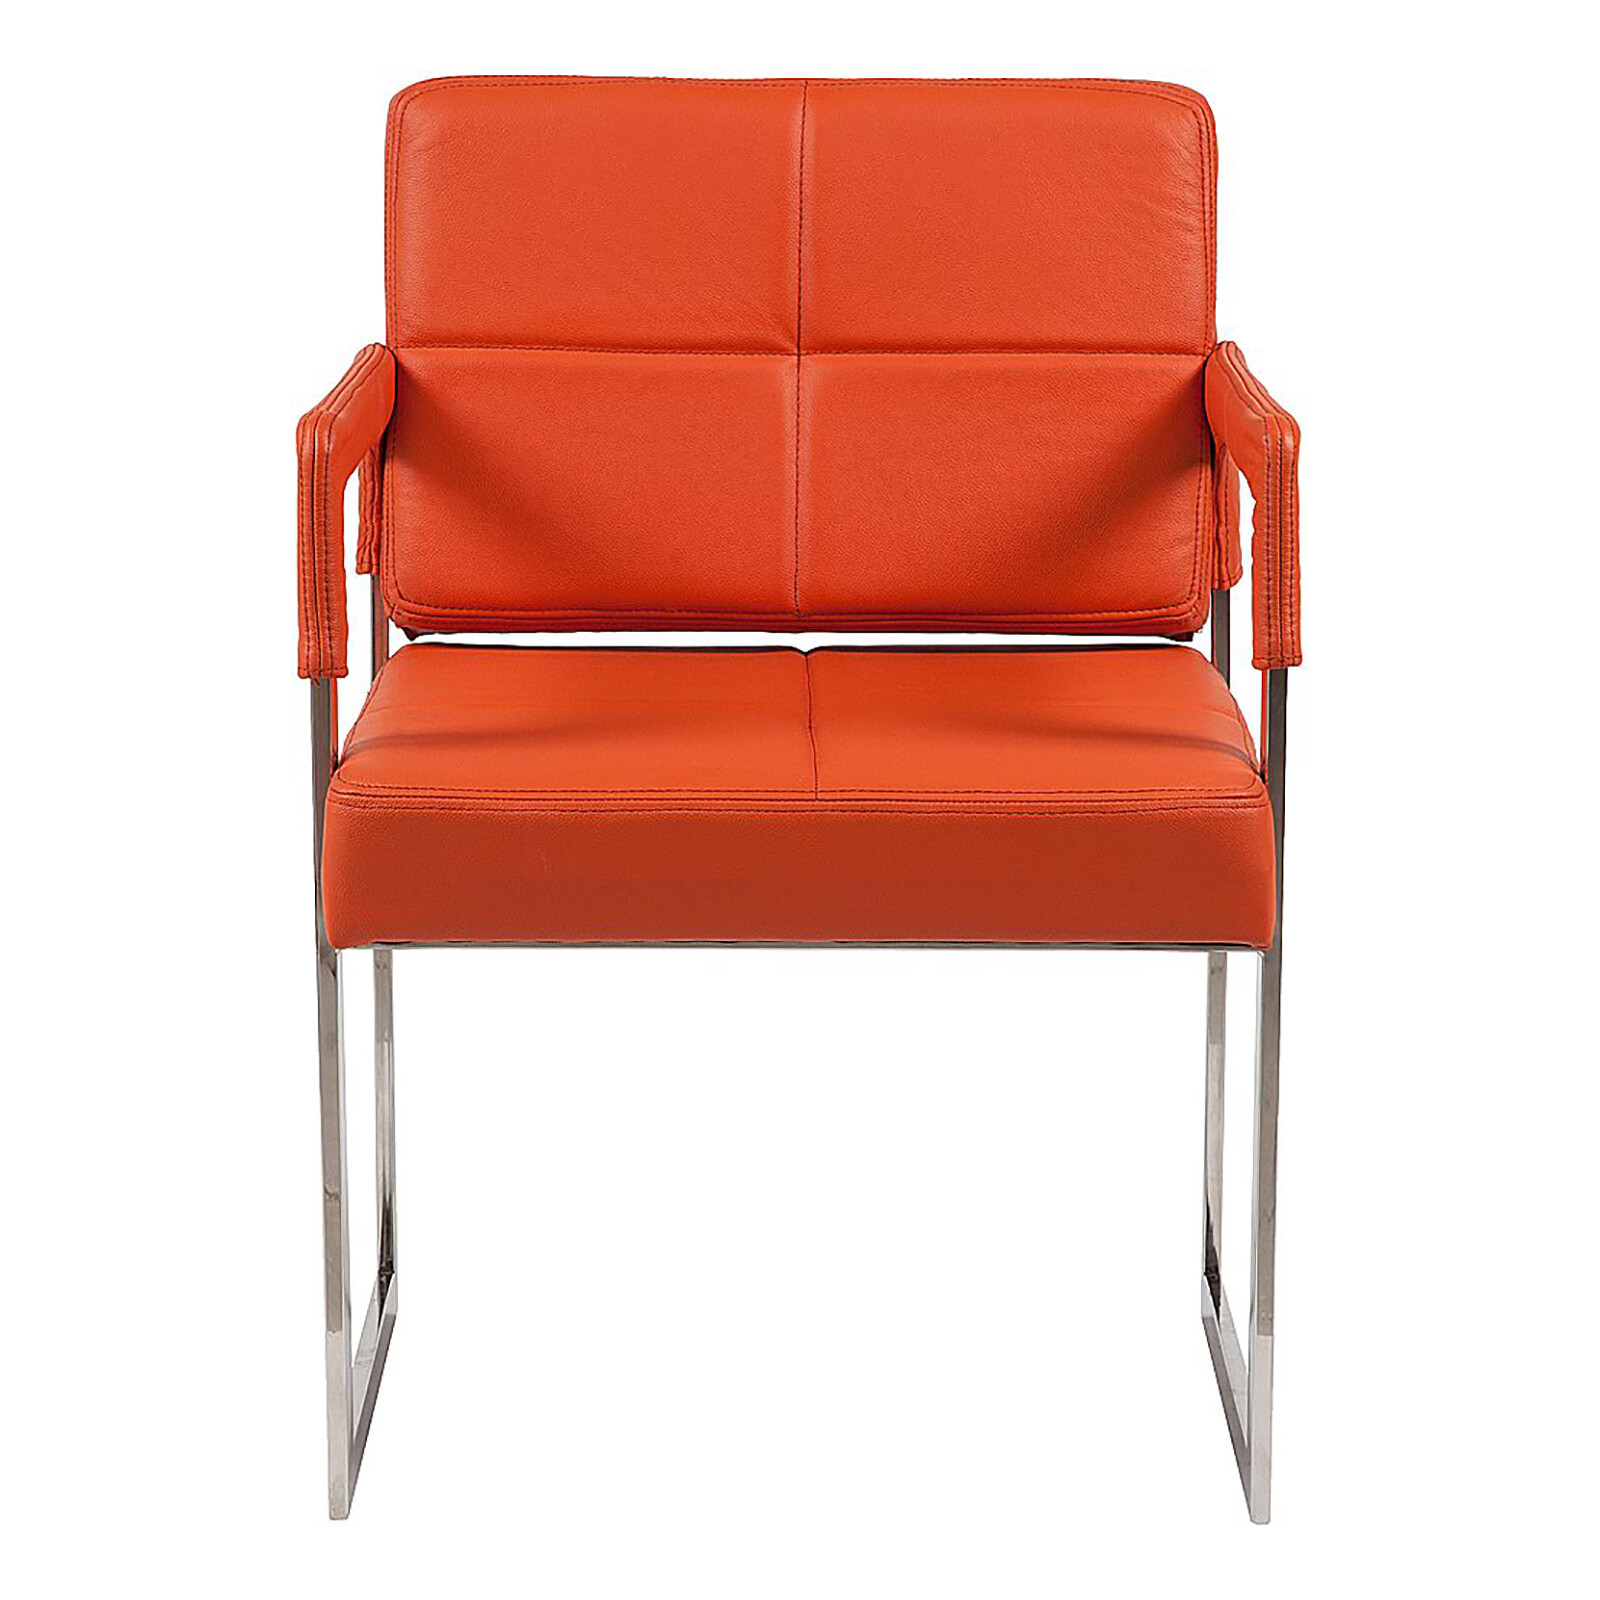 Кресло мягкое оранжевое Aster Chair